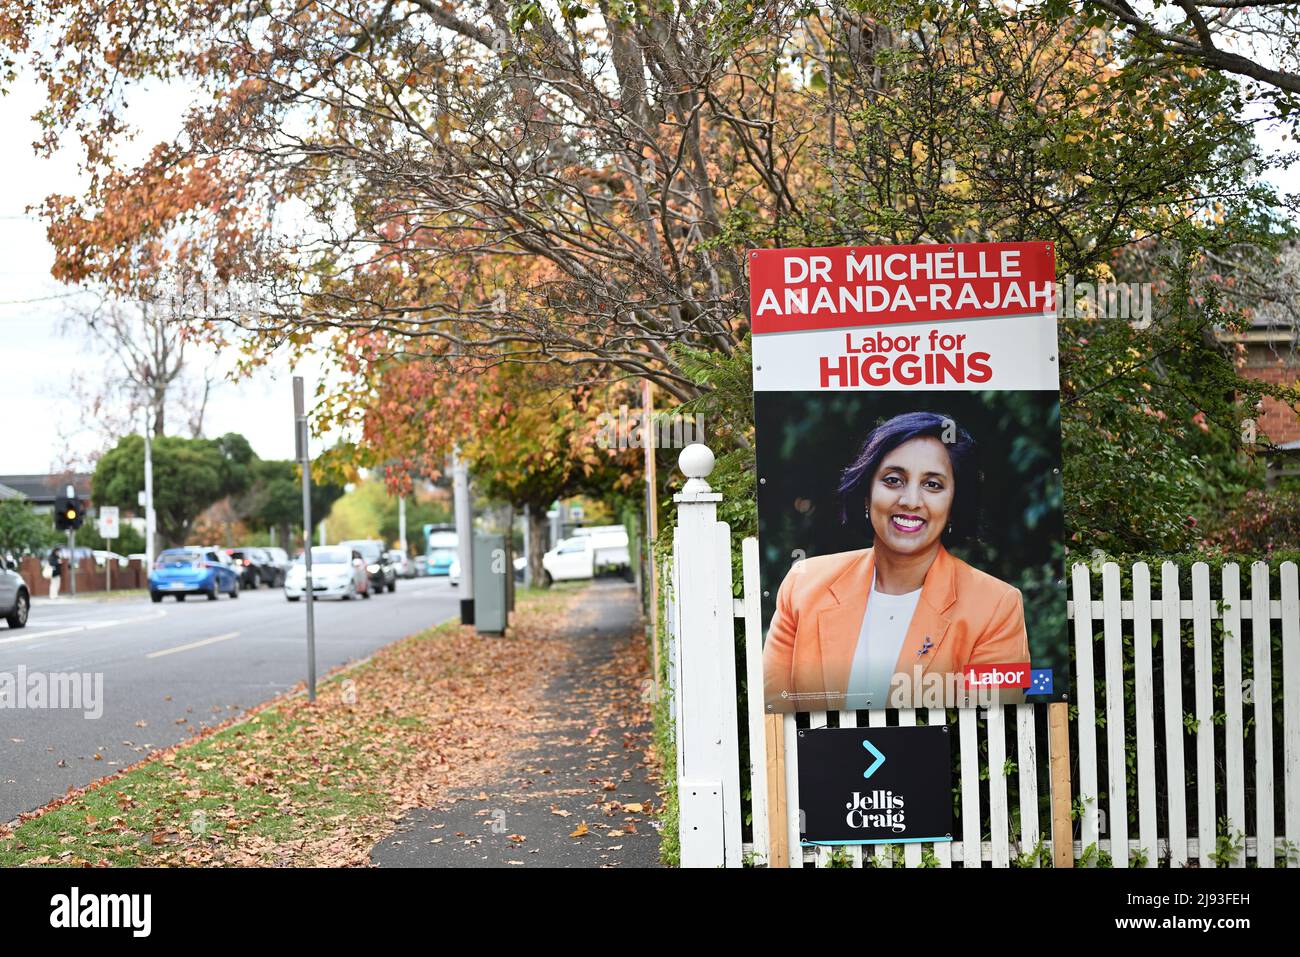 La dott.ssa Michelle Ananda-Rajah ha firmato una campagna politica per promuovere la candidatura del candidato laburista alla sede di Higgins alle prossime elezioni federali Foto Stock